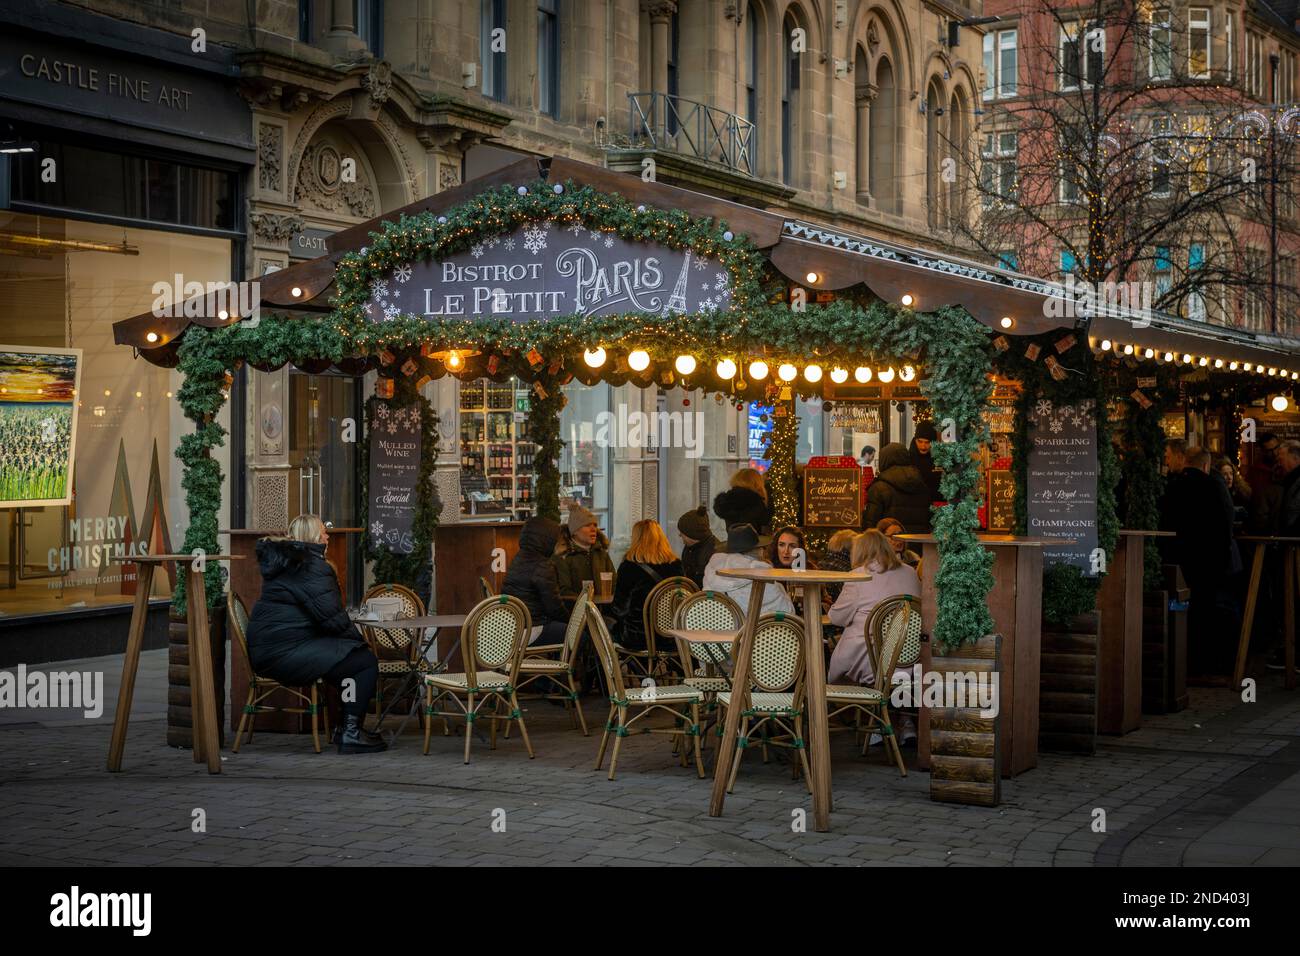 Personnes assises à des tables à l'extérieur du chalet en bois de Bistrot le petit Paris, partie des marchés de Noël de Manchester. ROYAUME-UNI Banque D'Images